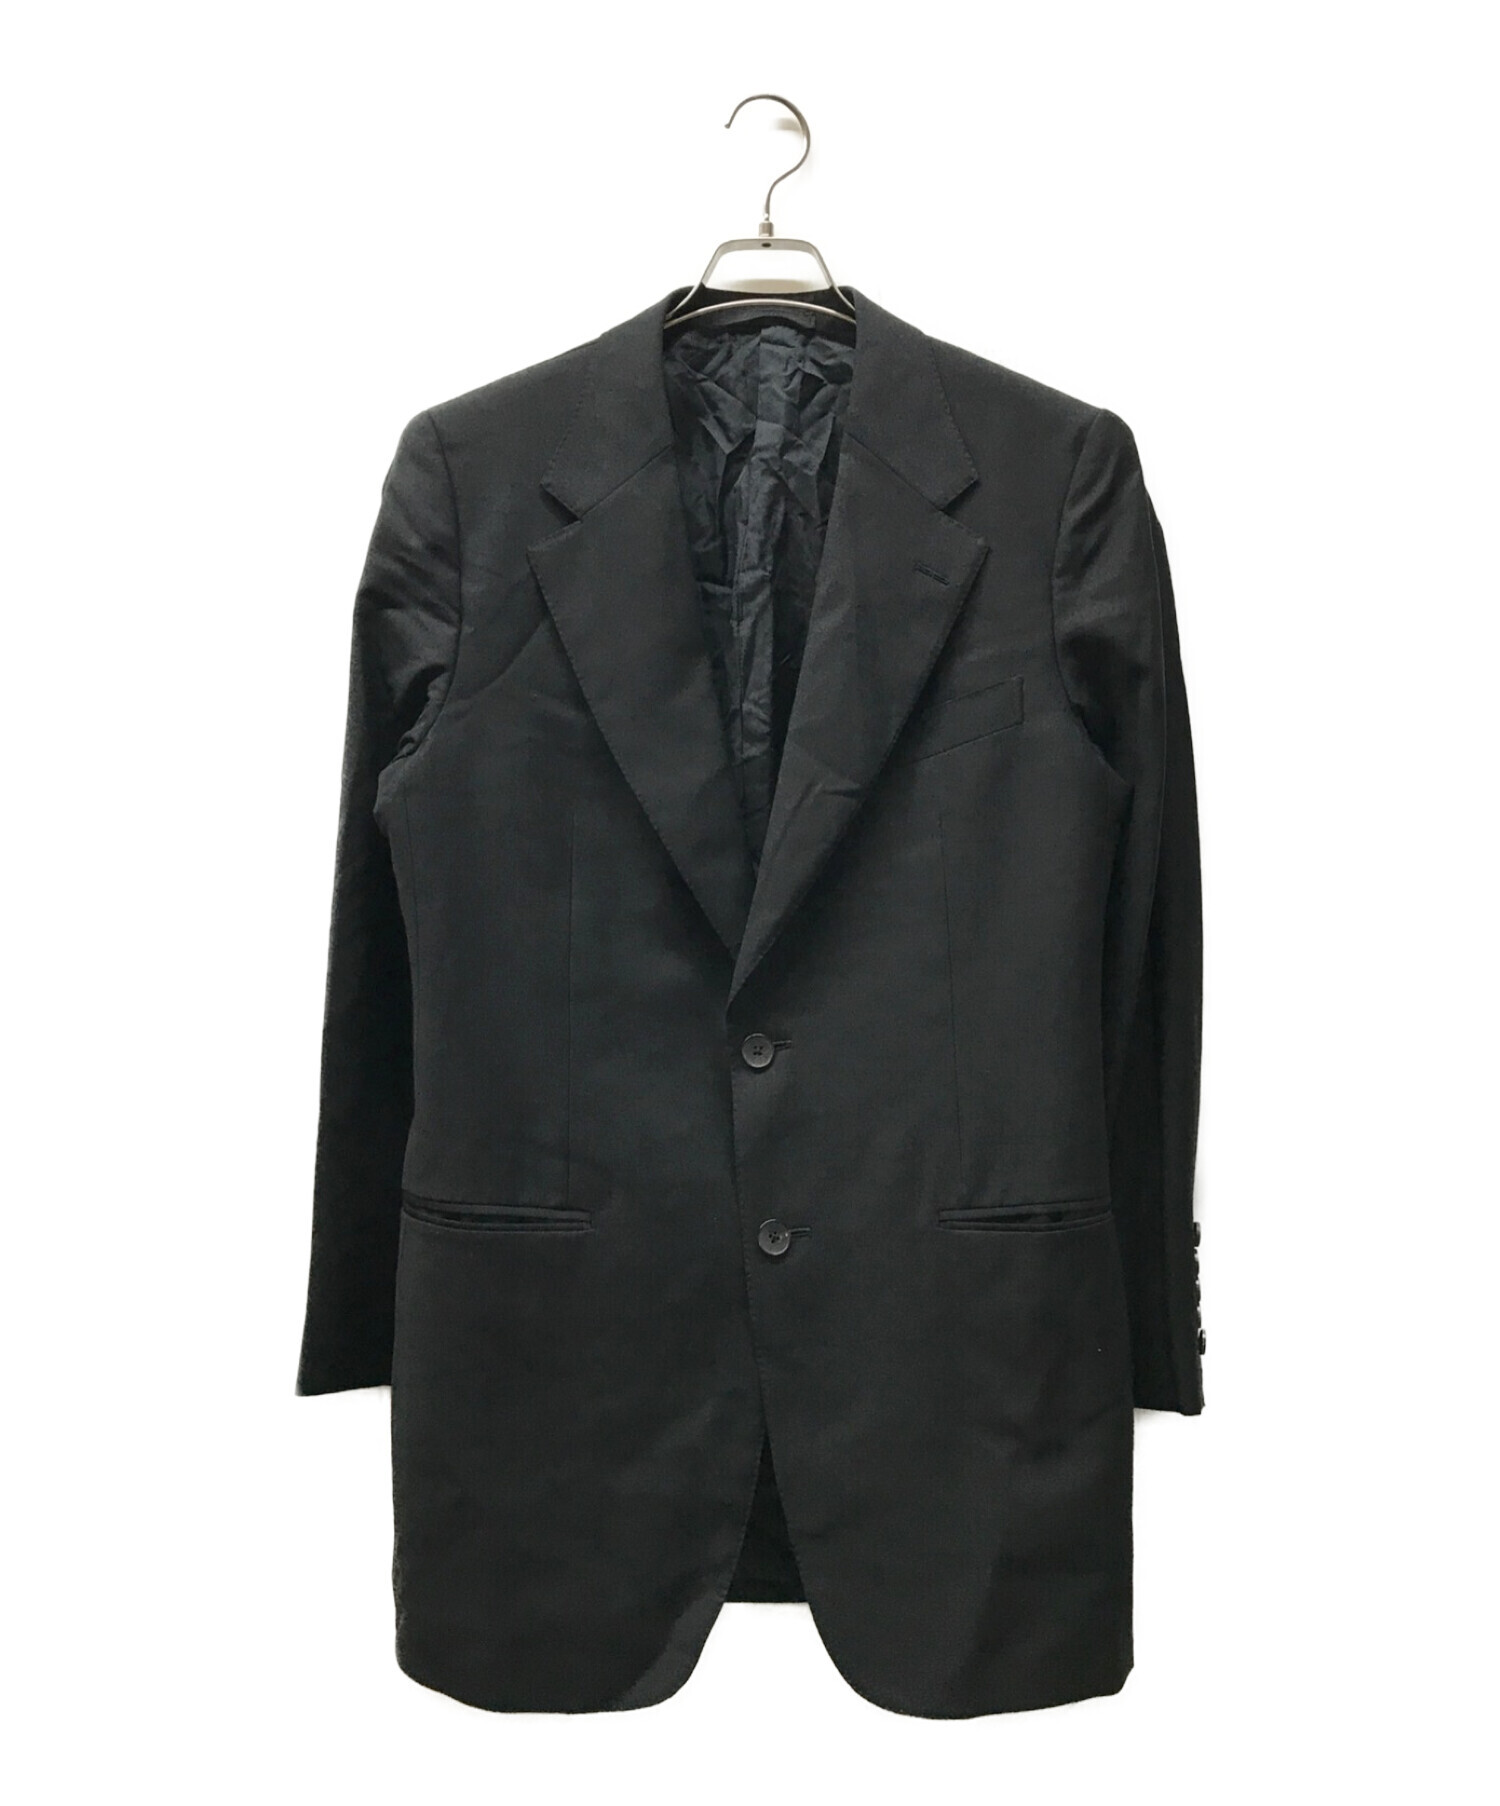 18800円オンライン体験ツアー 新作 GUCCI テーラードジャケット スーツ